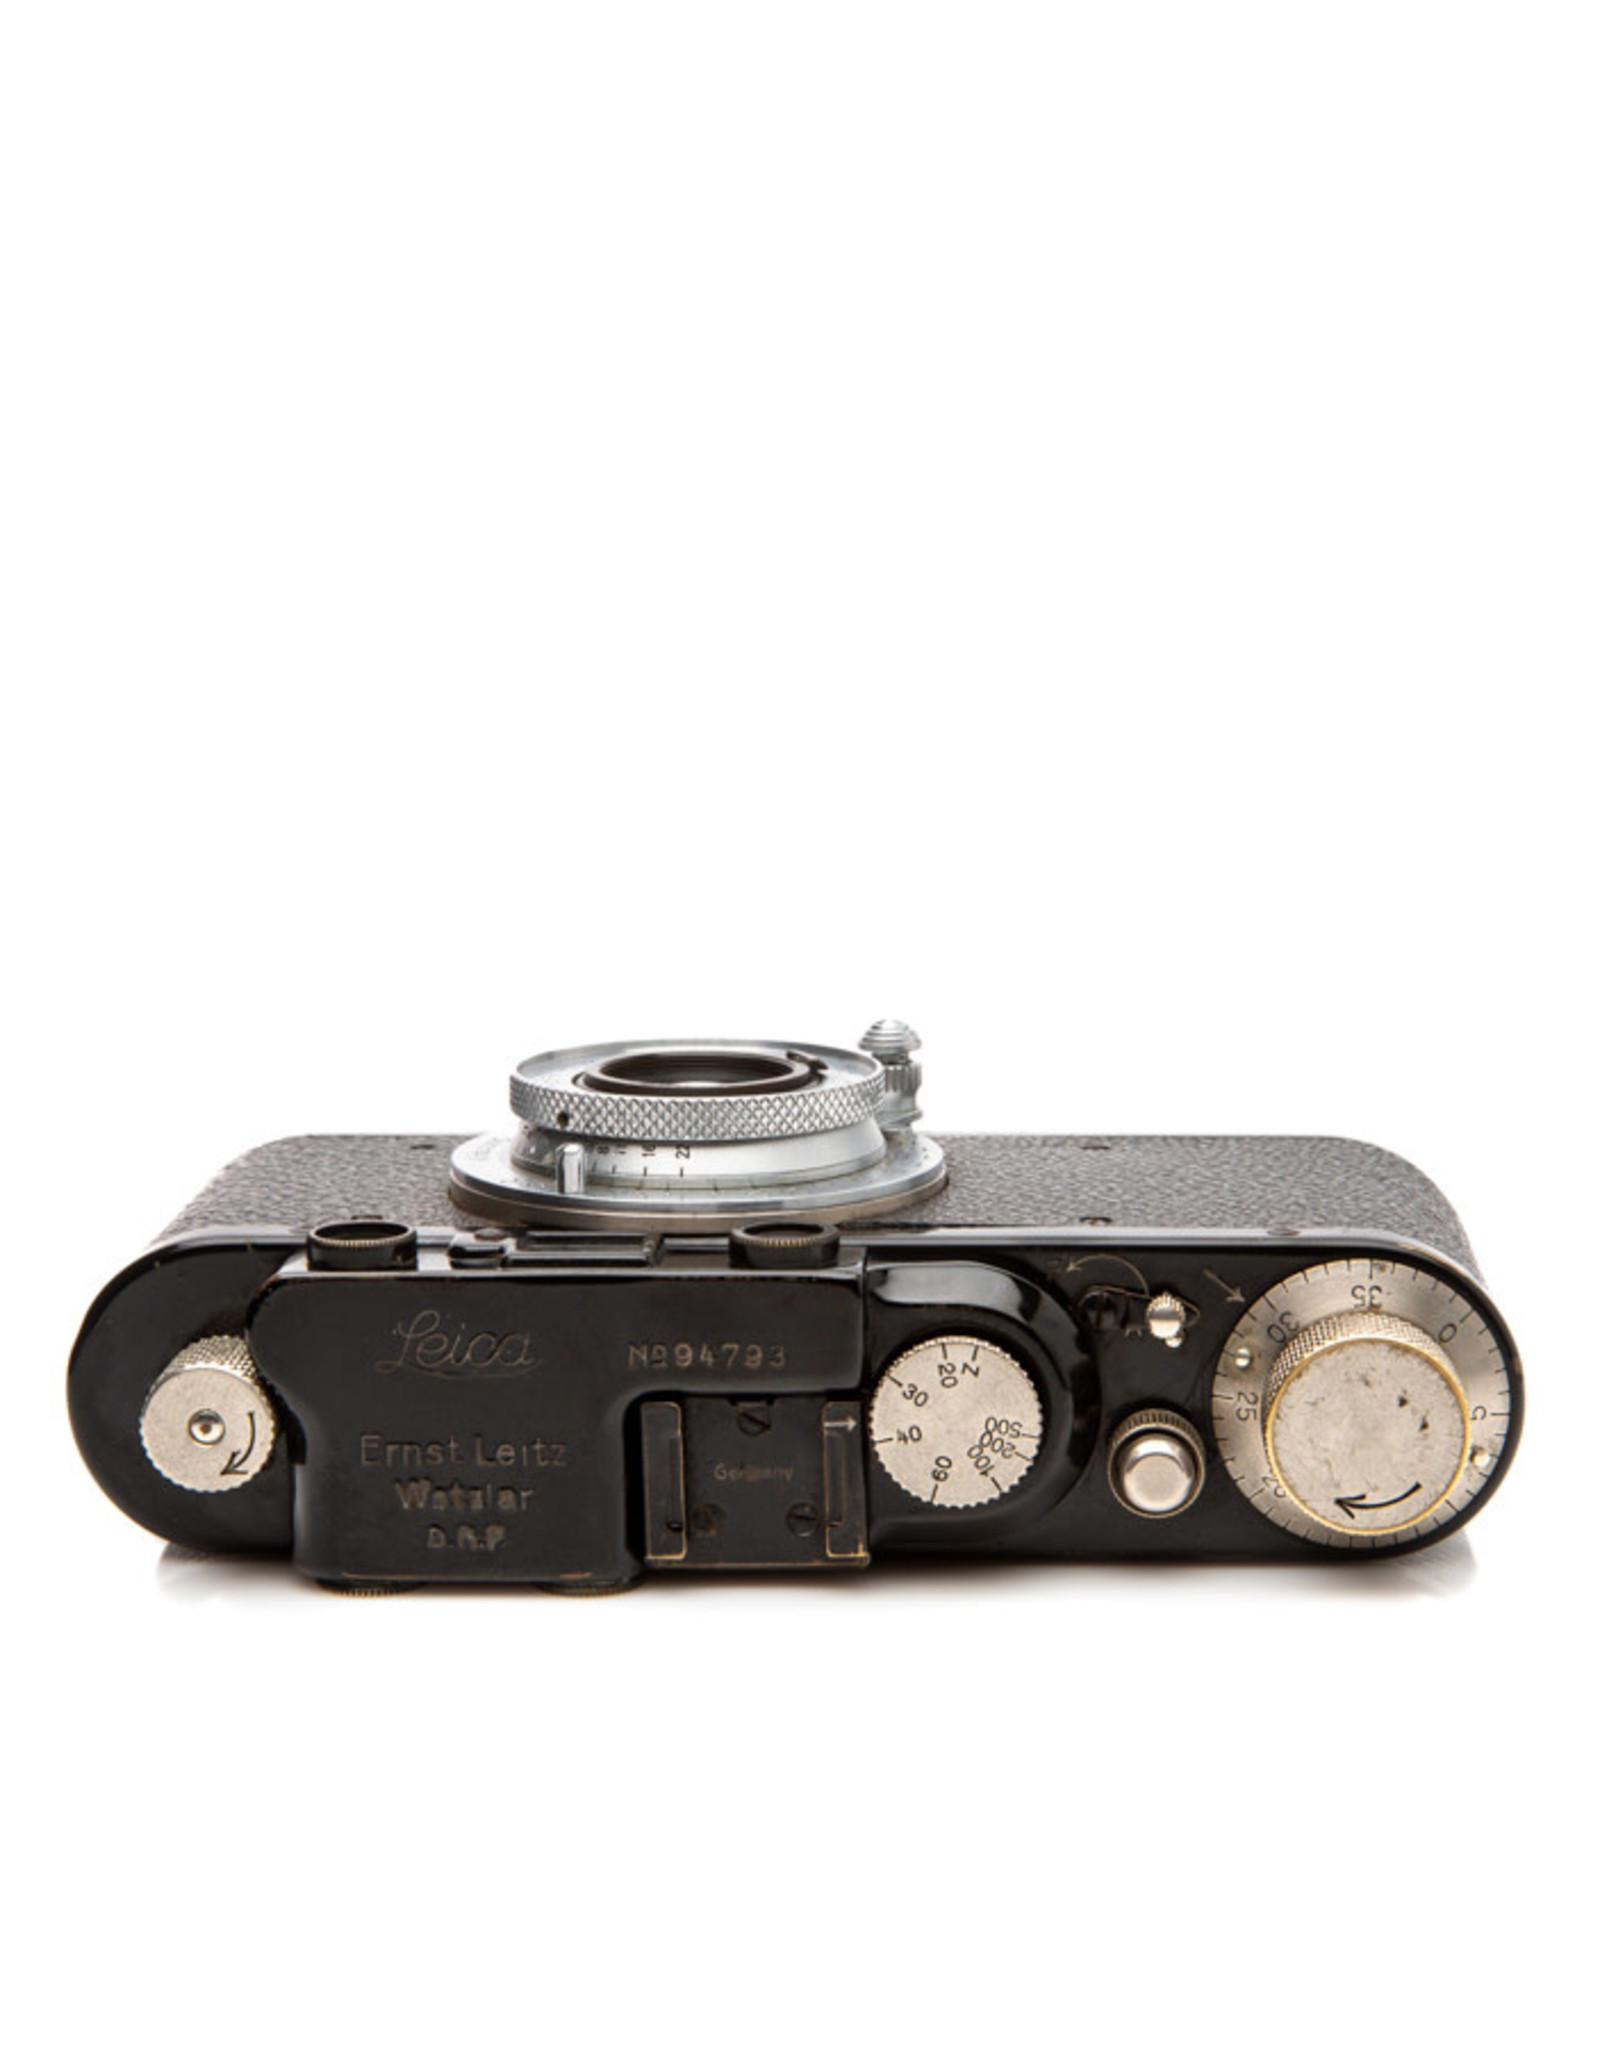 Leica IID 35mm Rangefinder Camera w/5 Cm. ƒ3.5 Elmar Lens